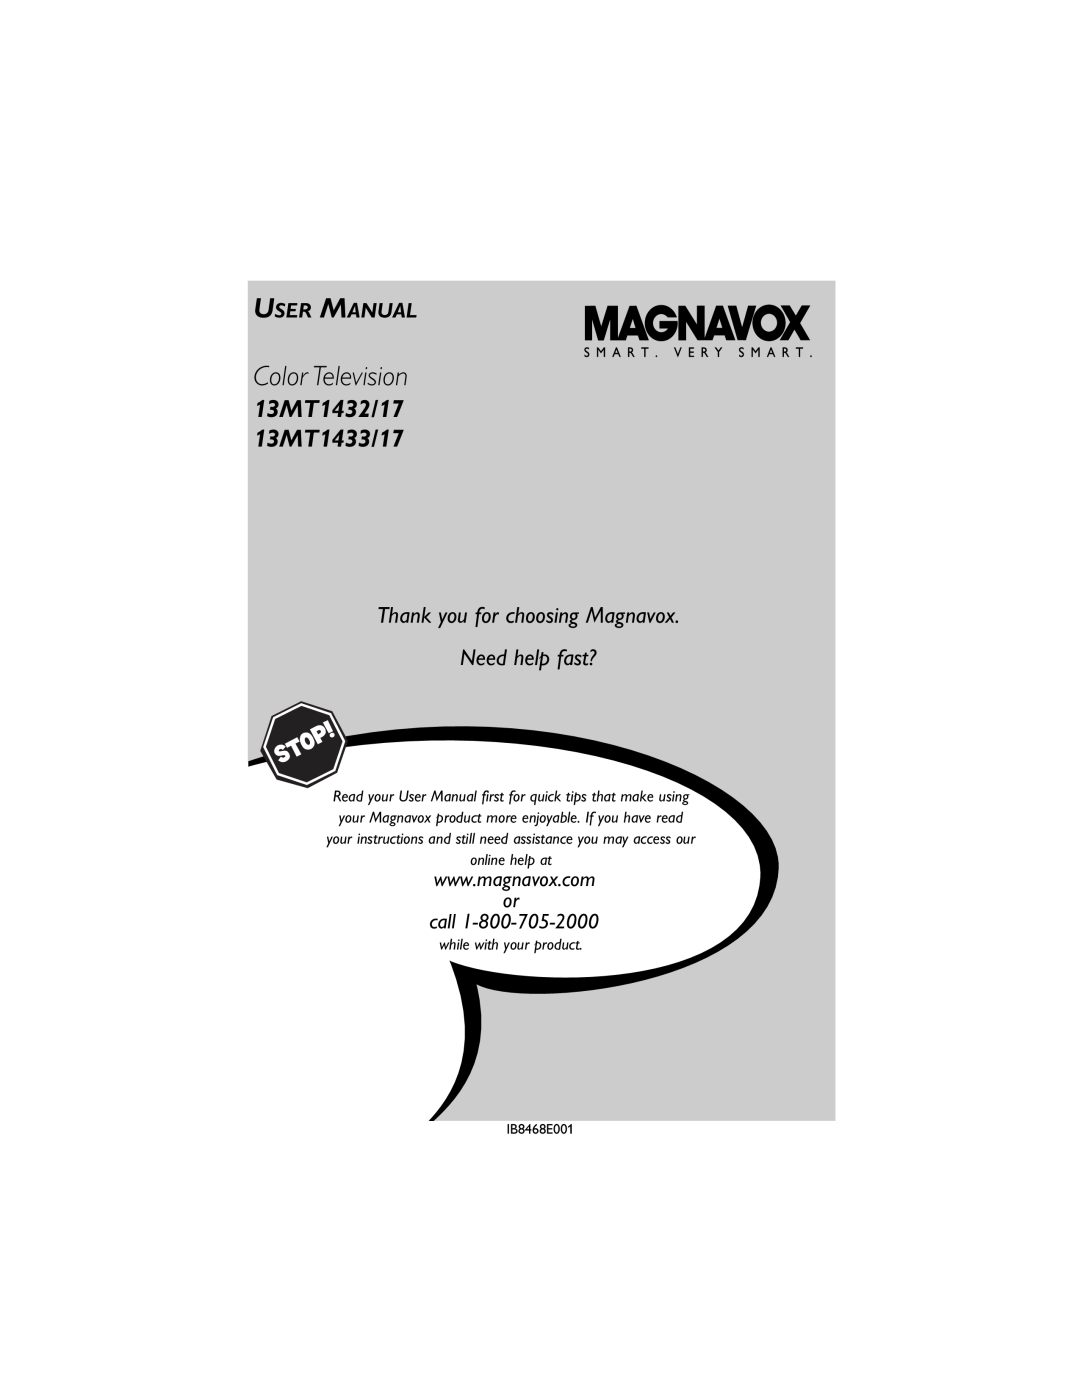 Magnavox 13MT1432/17, 13MT1433/17 user manual User Manual, Color Television, 13MT1432/17 13MT1433/17, call 